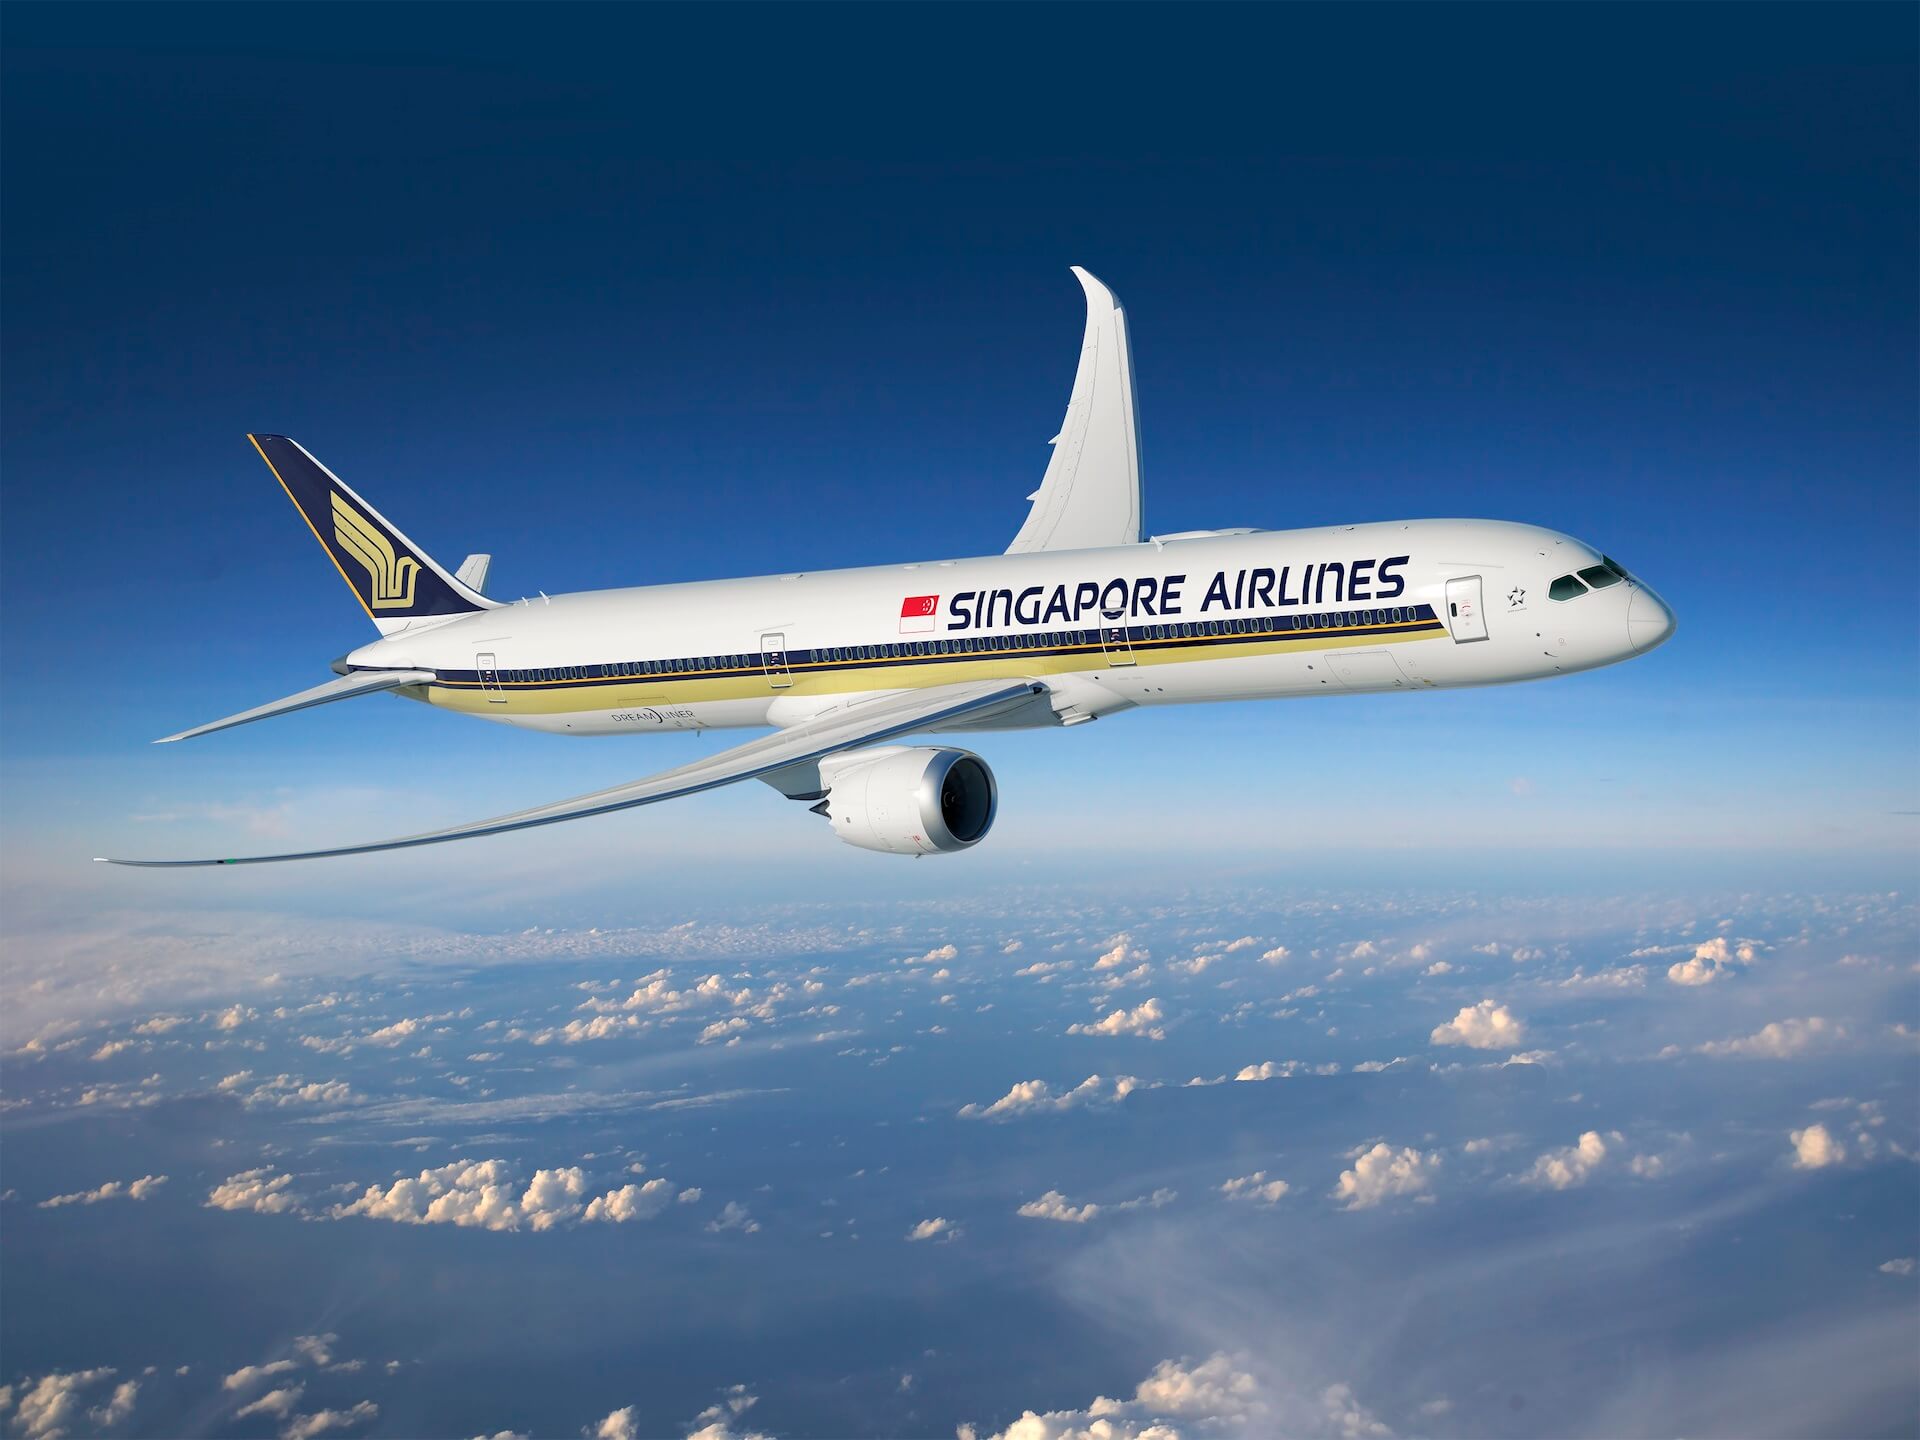 Singapore Airlines meilleure compagnie au monde d'après Tripadvisor